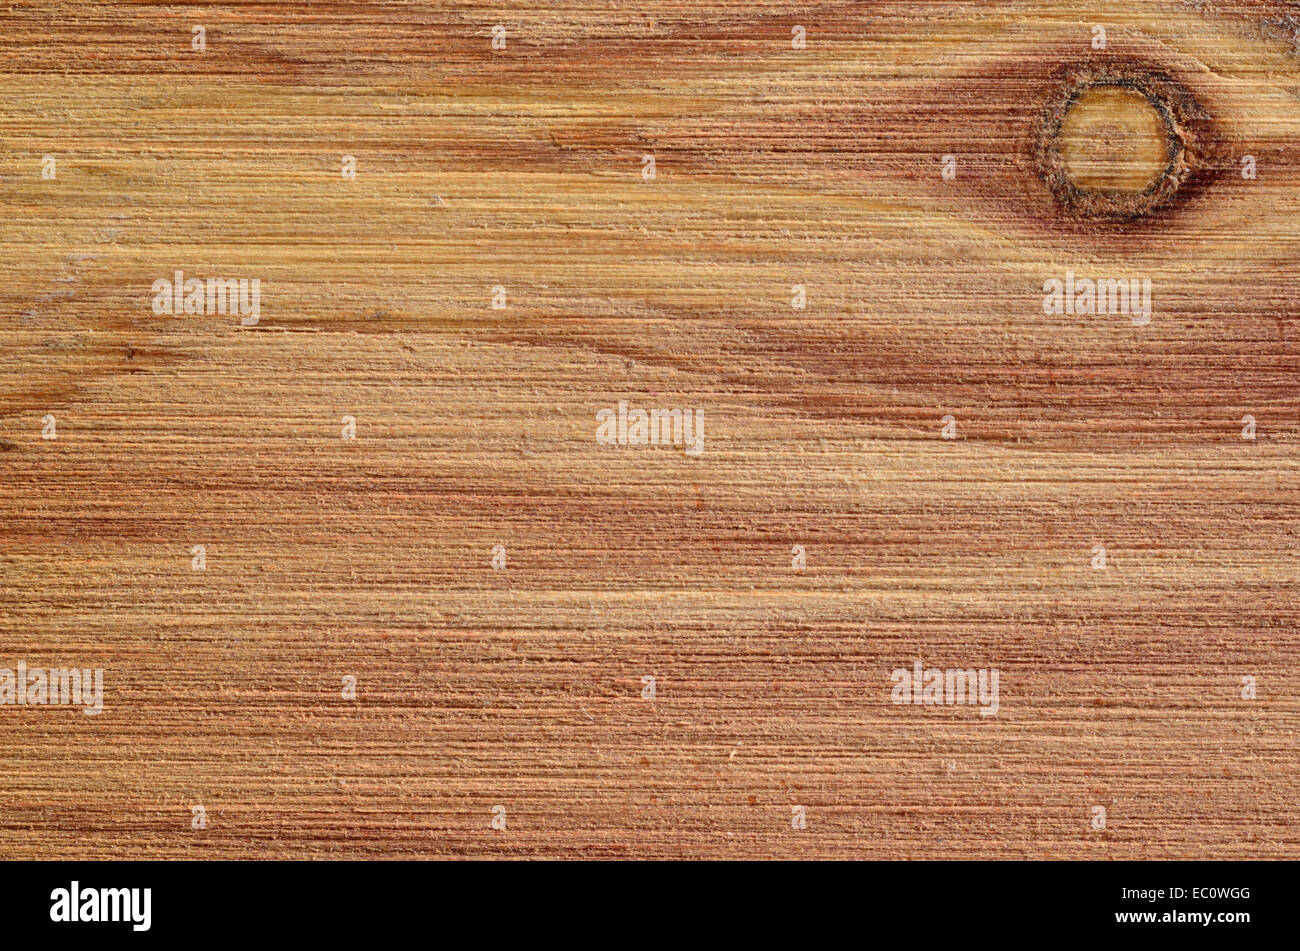 Ein Makro Nahaufnahme der Maserung des Holzes für den Hintergrund oder Kopie. Stockfoto